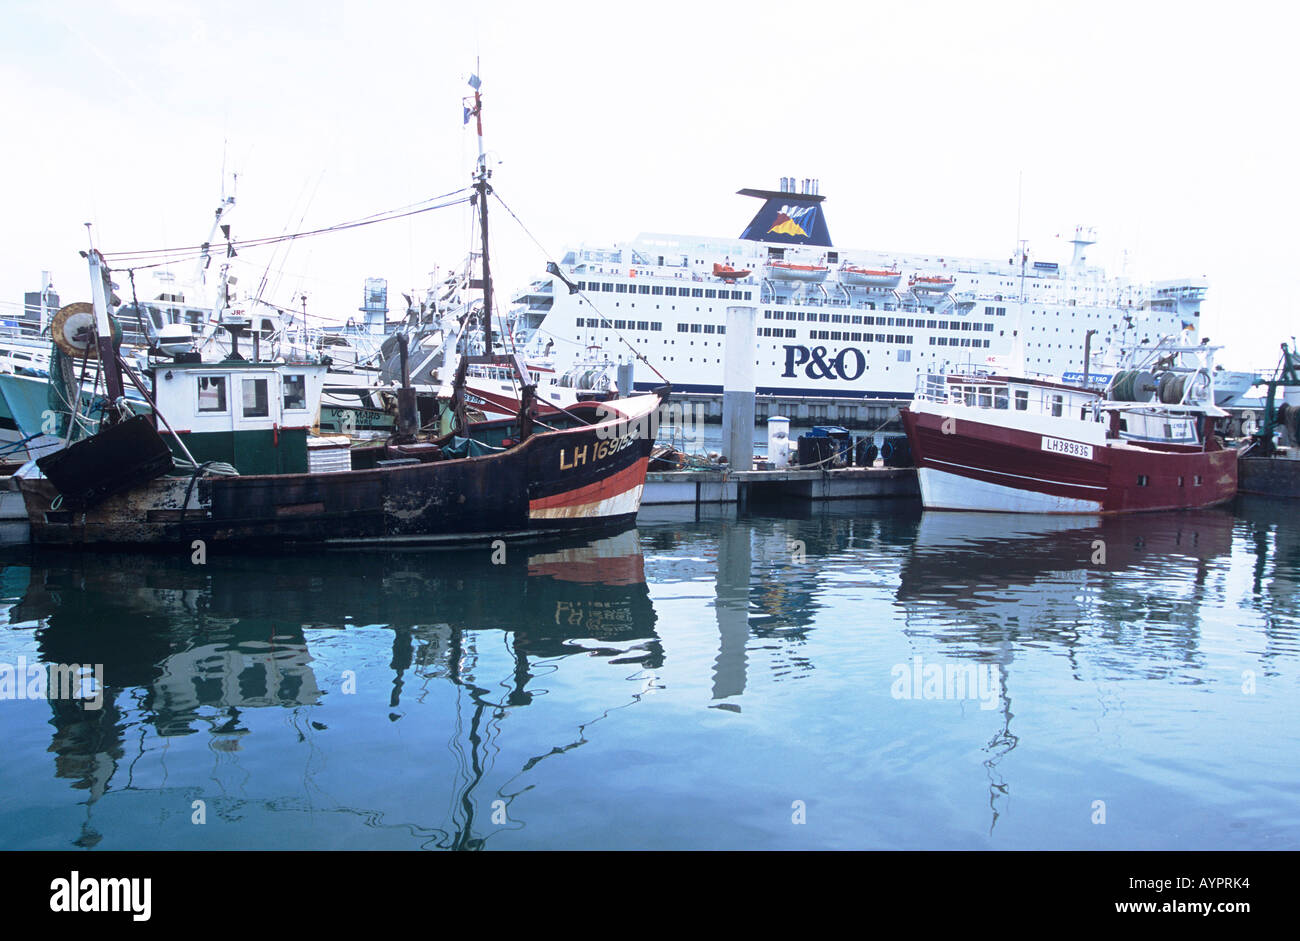 P O F hre im Hafen  von  Le Havre  Stockfoto Bild 9806707 